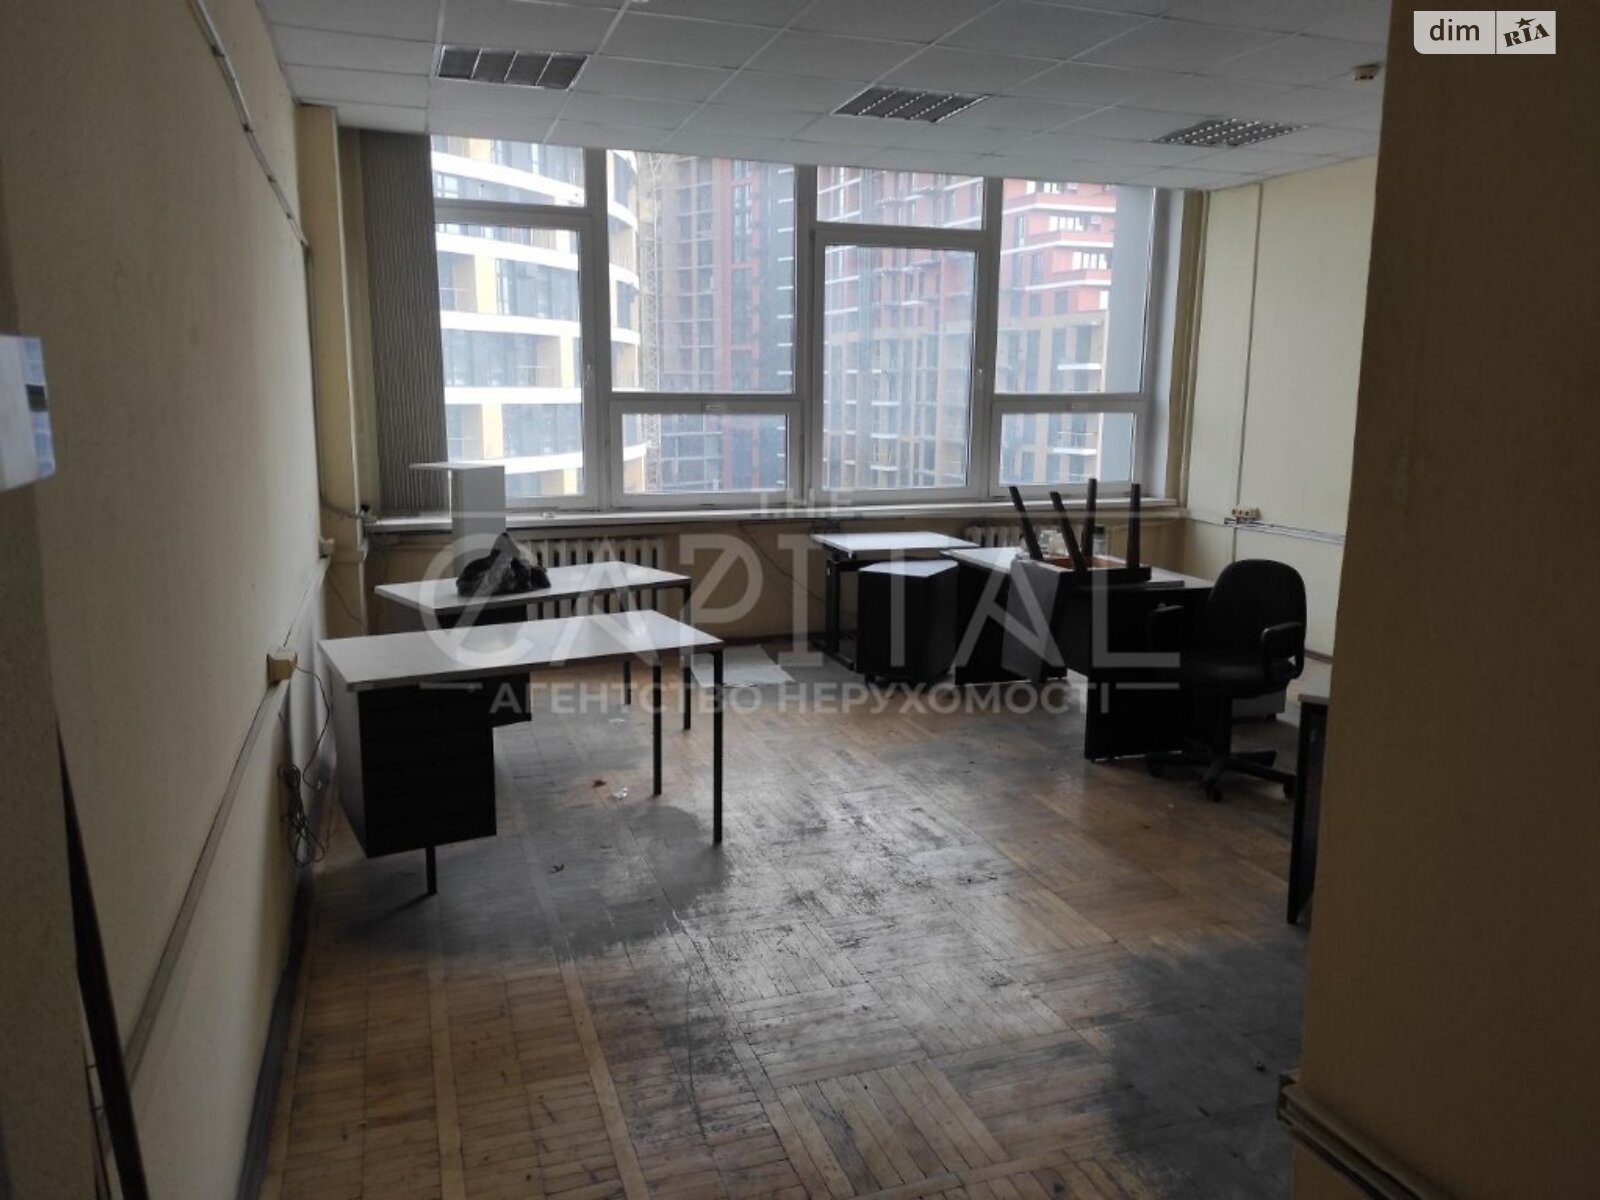 Аренда офисного помещения в Киеве, Кудрявский узвоз 7, помещений - 12, этаж - 8 фото 1